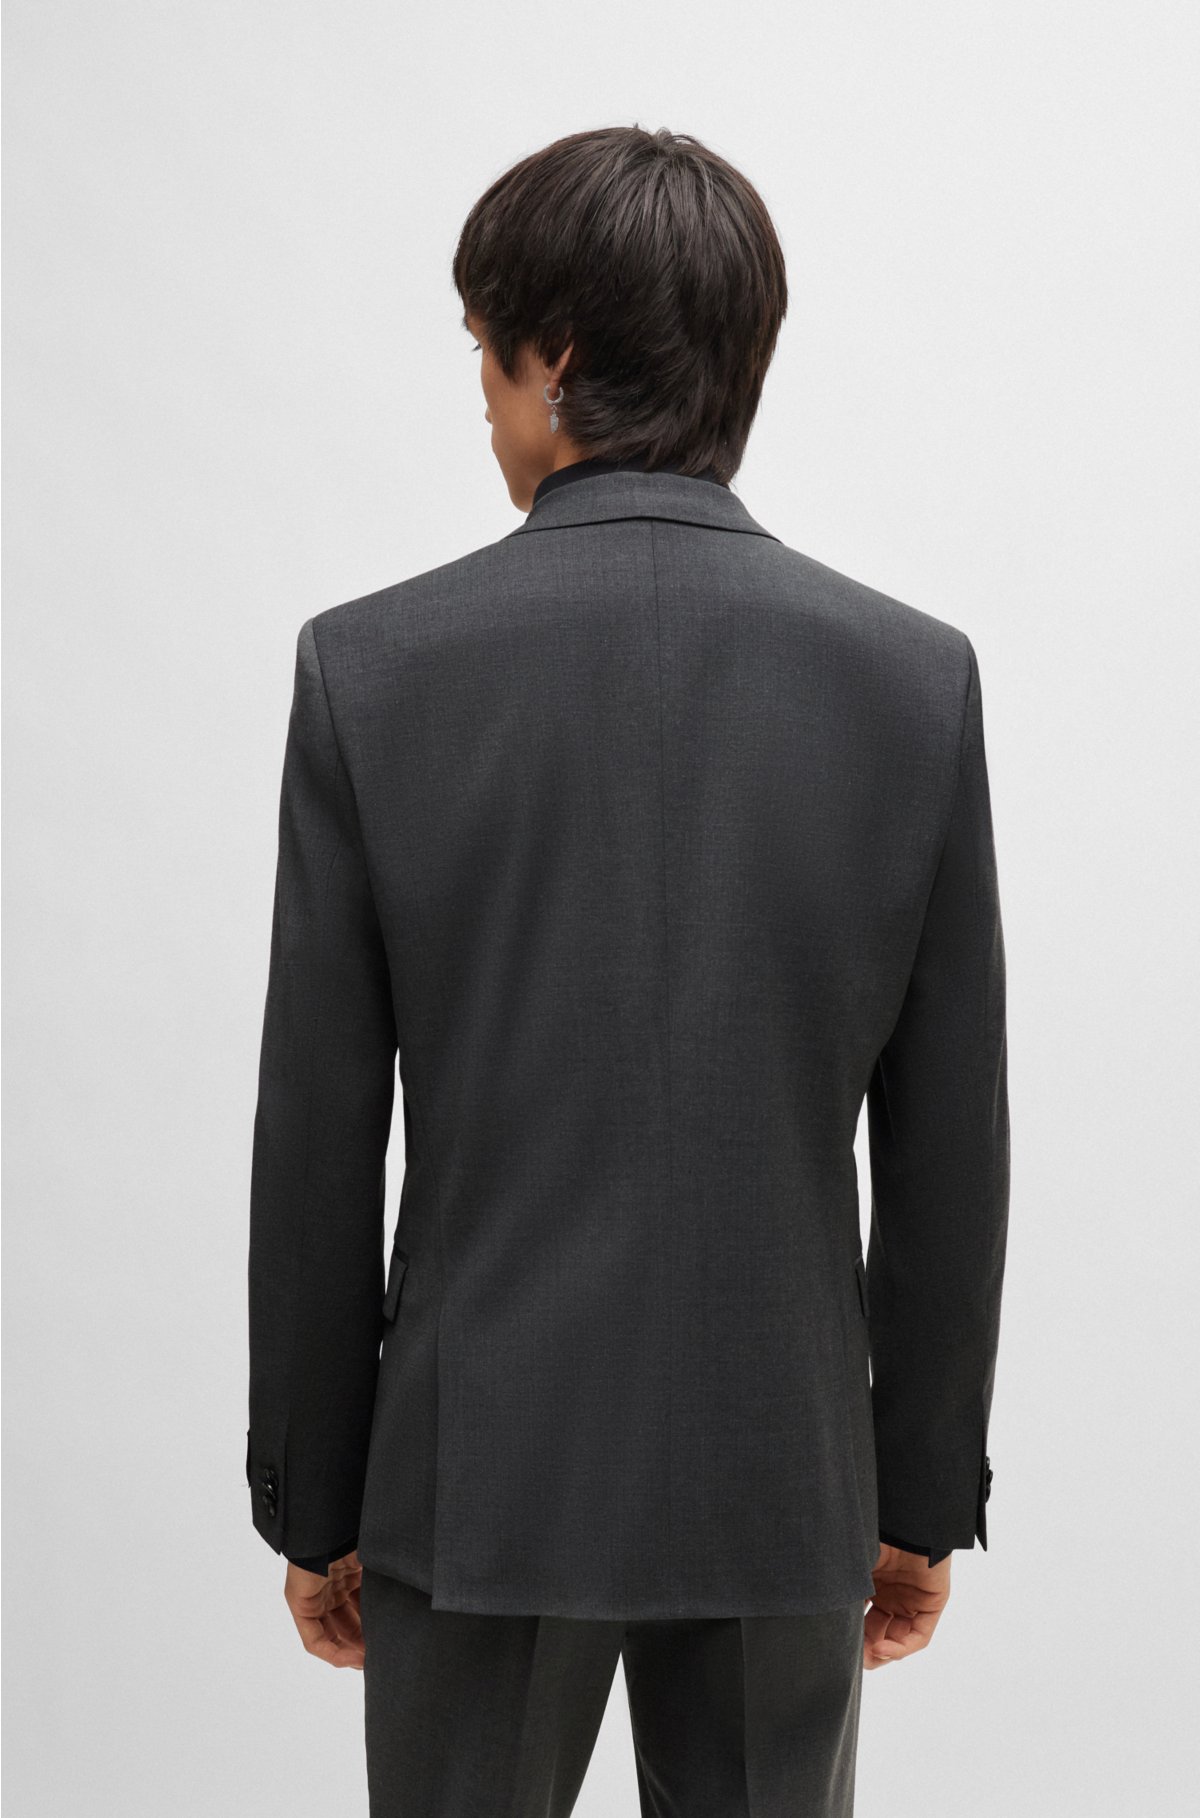 美品 ヒューゴボス パフォーマンス スーツ 56サイズ ブラック